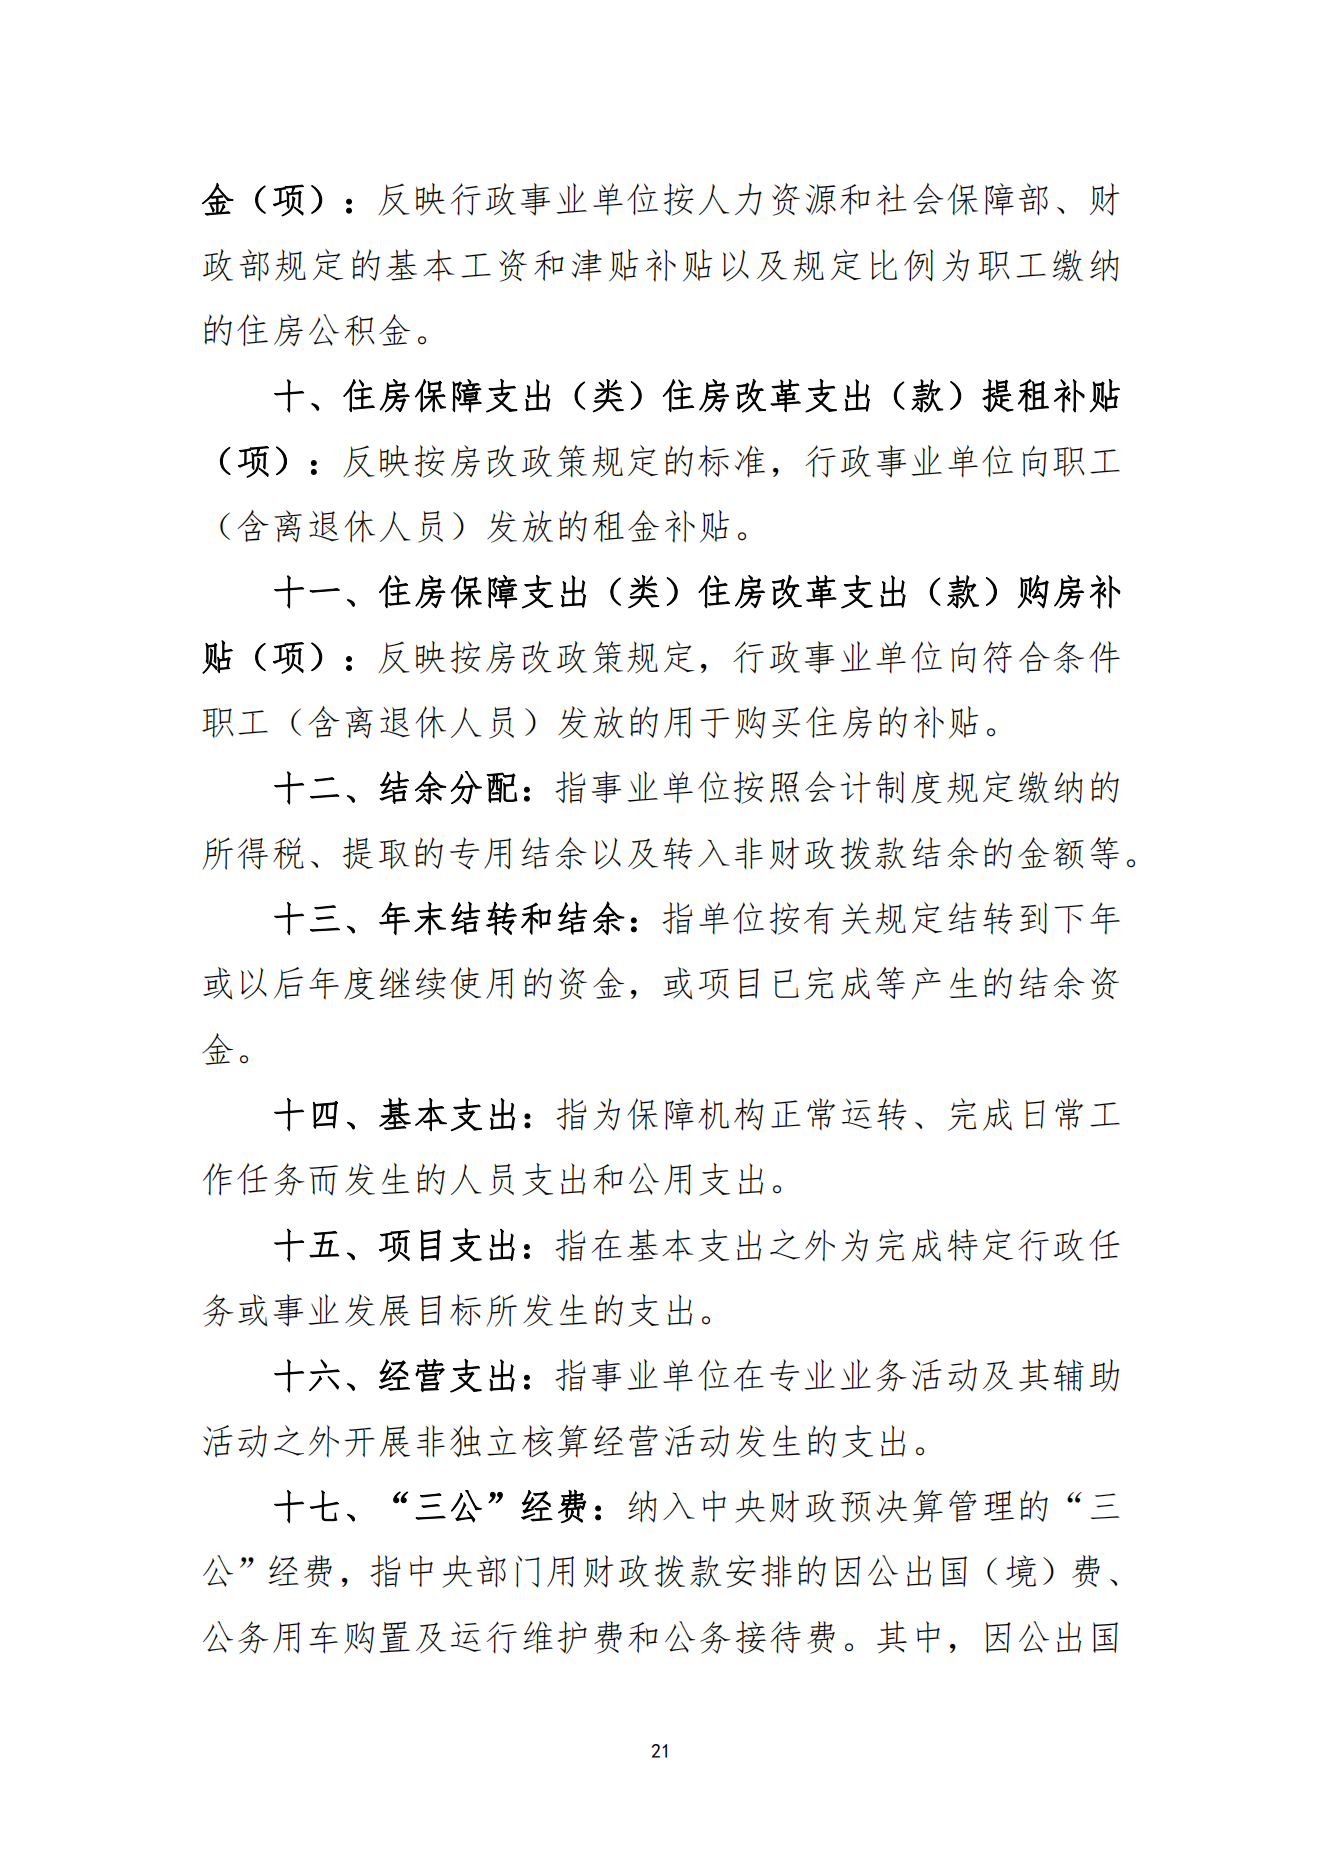 2023年8月7日 中国财政杂志社2022年度决算公开稿(1)_23.png